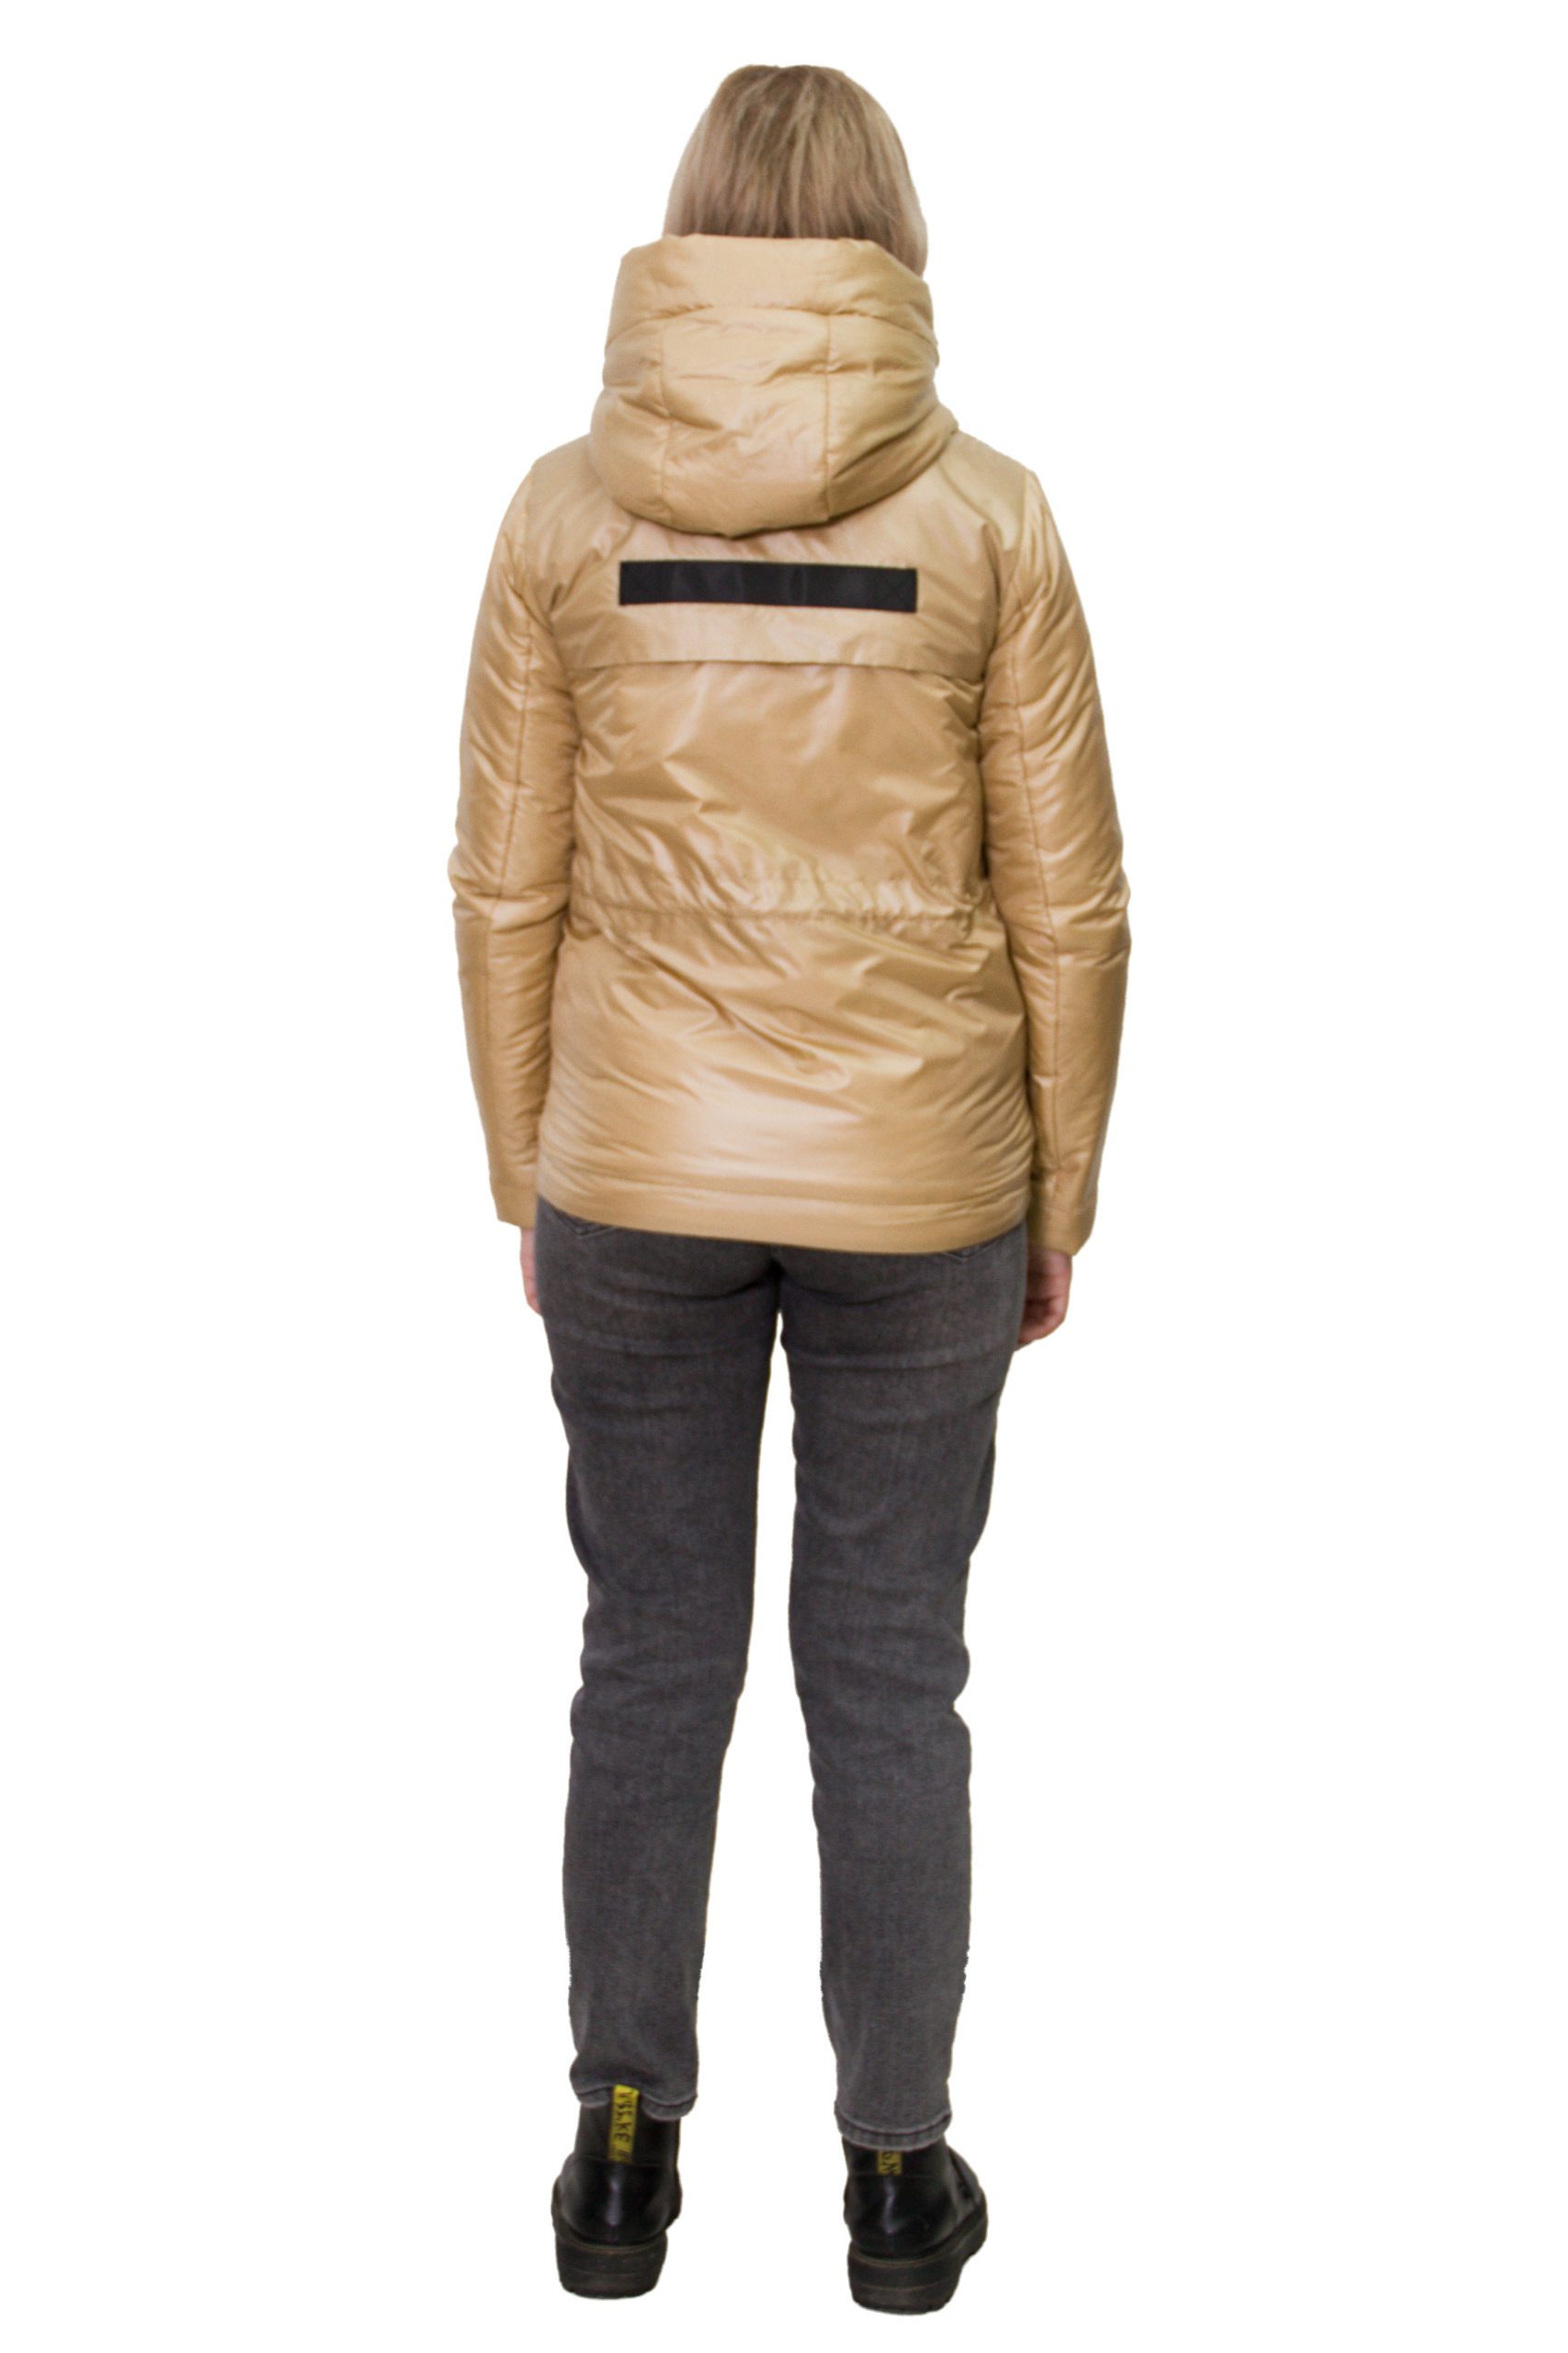 Демисезонная женская куртка (FineBabyCat)